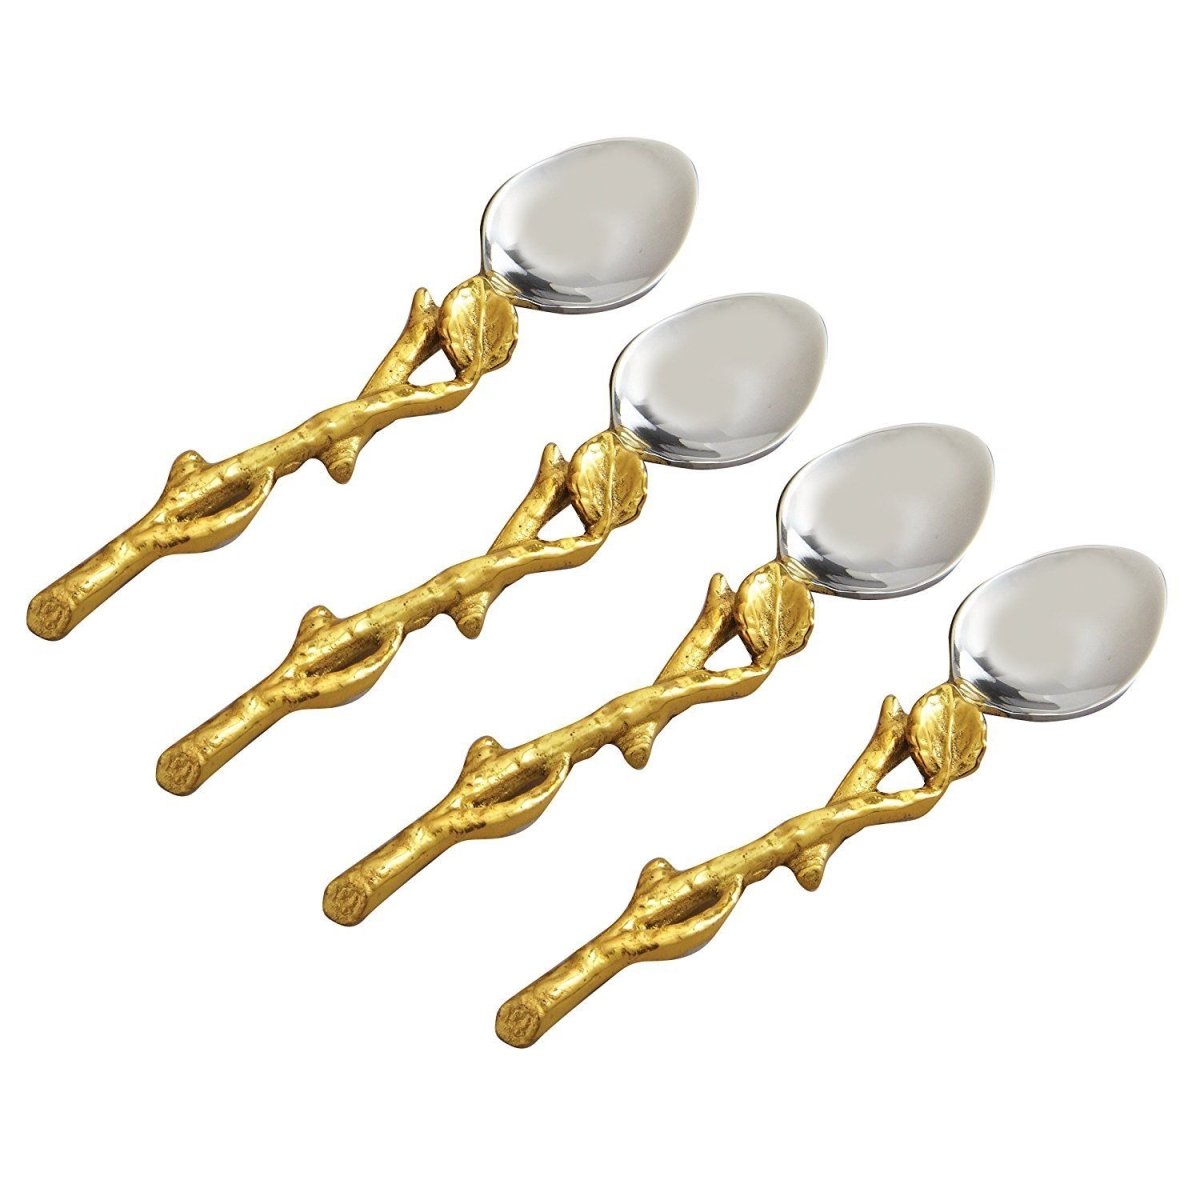 70013 5 In. Golden Vine Spoons - Set Of 4